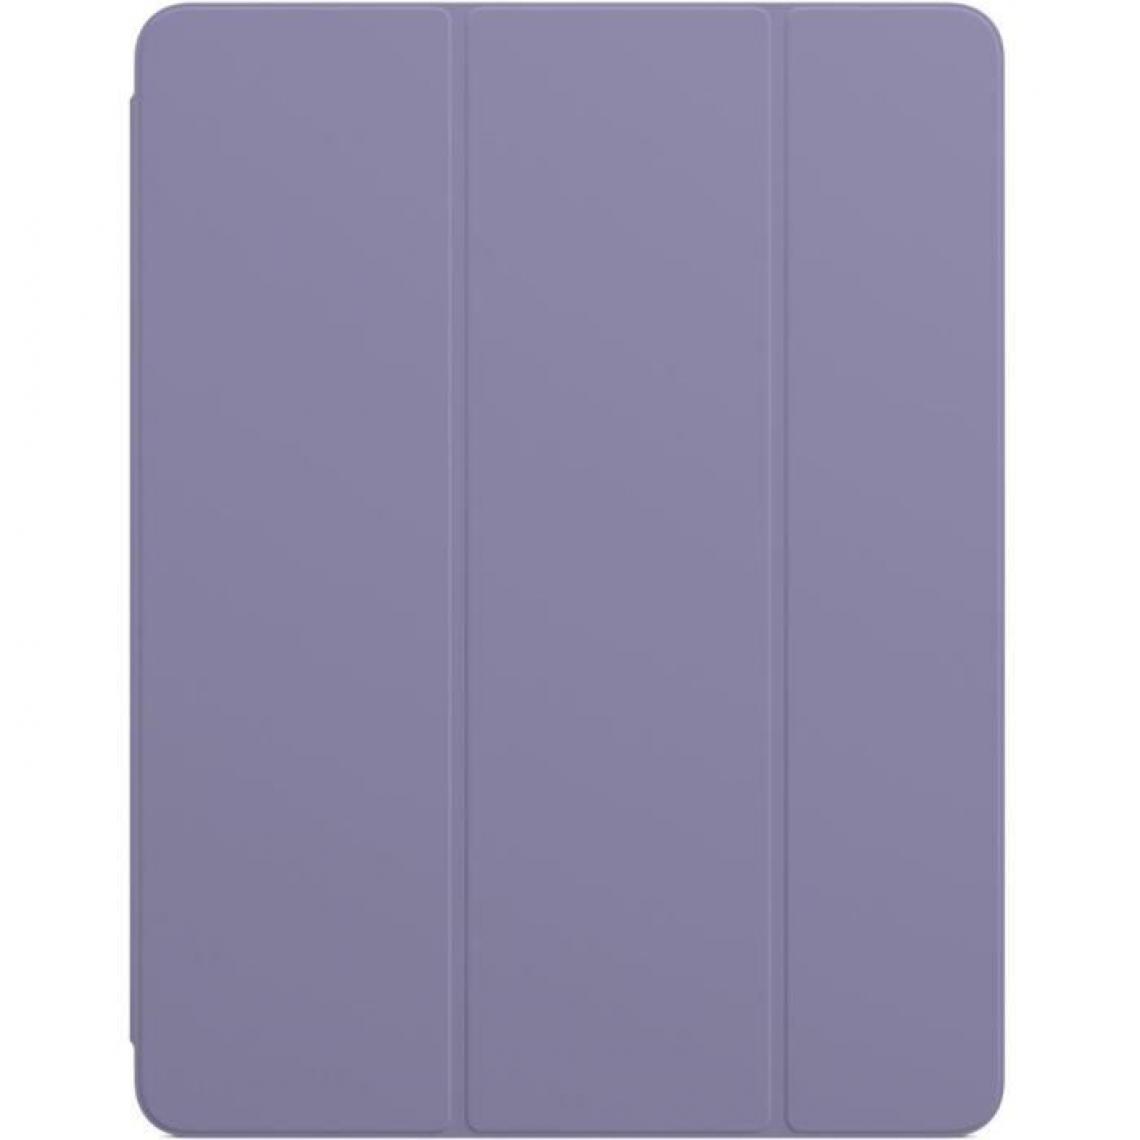 Apple - Smart Folio pour iPad Pro 12,9 pouces (5? génération) - Lavande anglaise - iPad